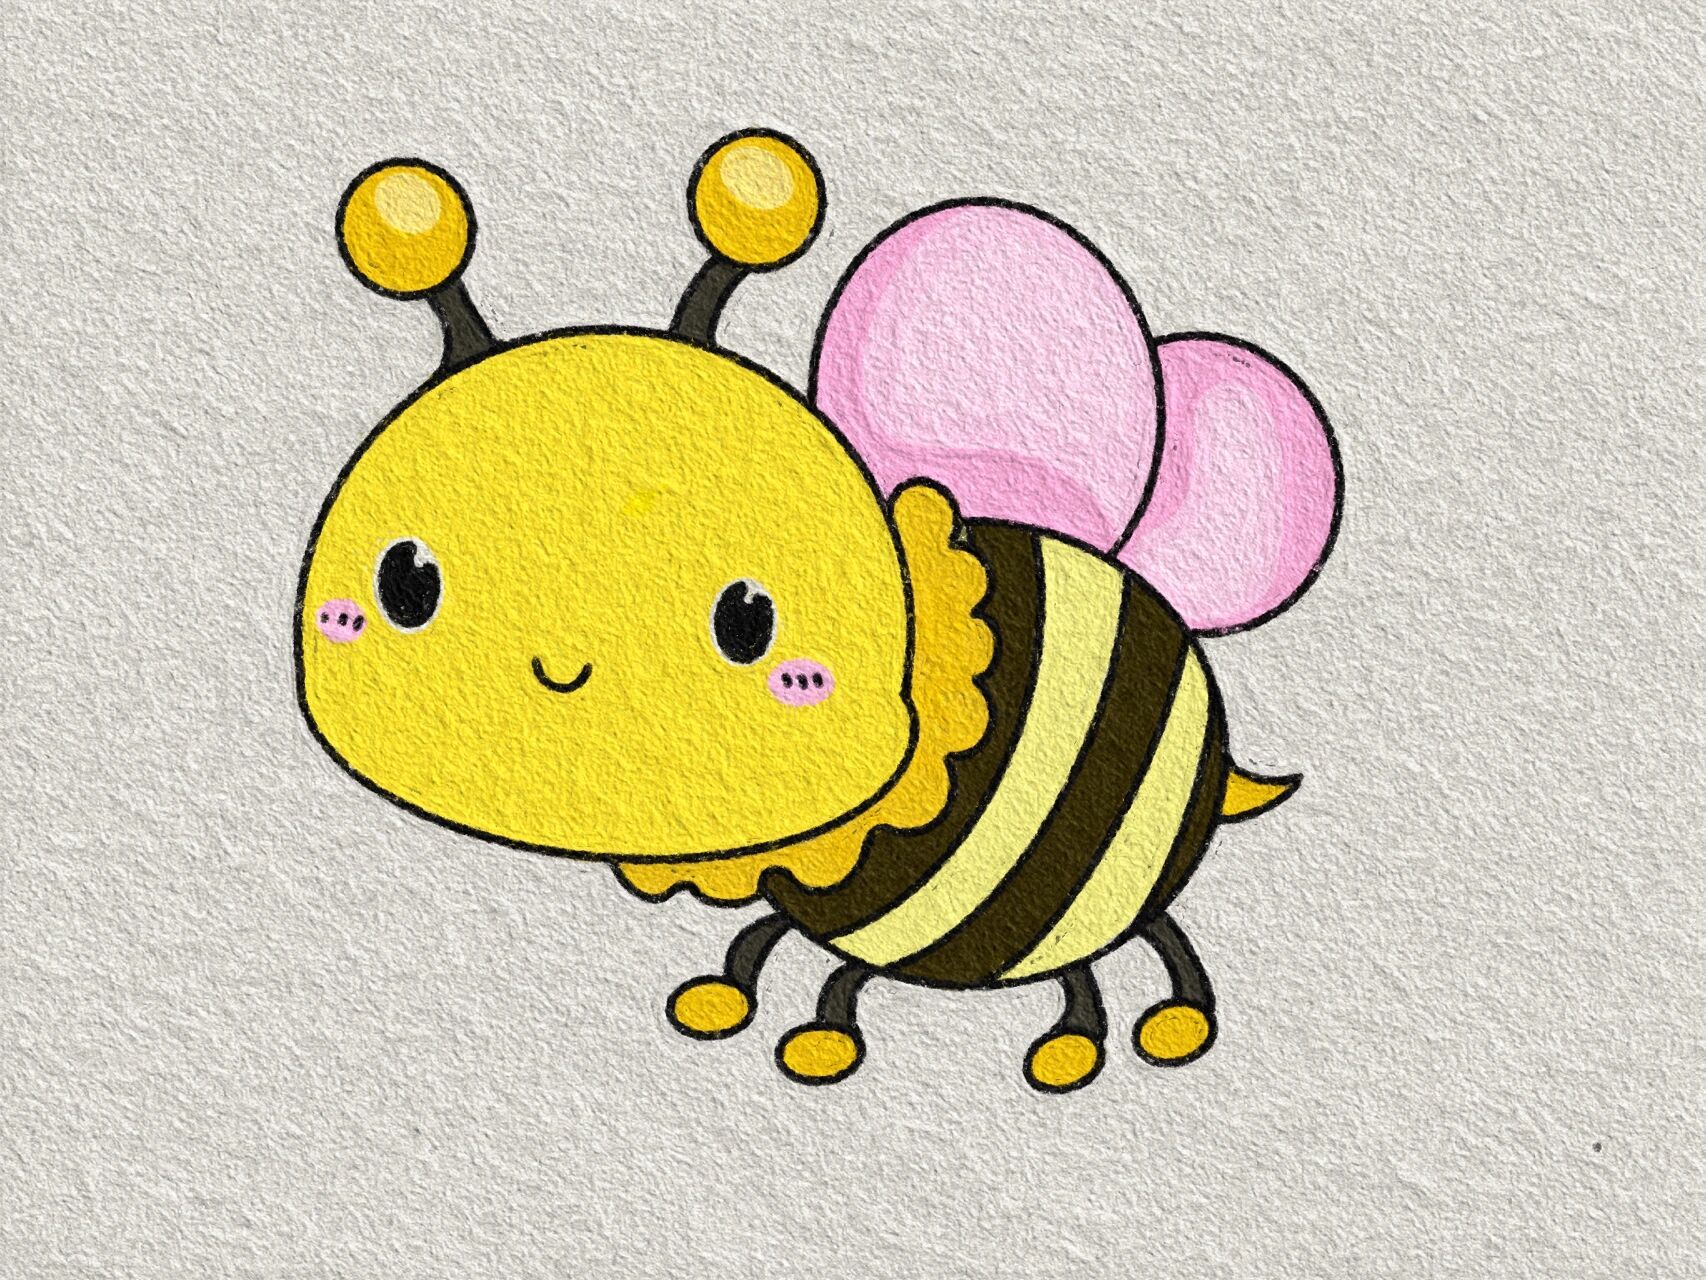 蜜蜂简笔画 简单彩色图片